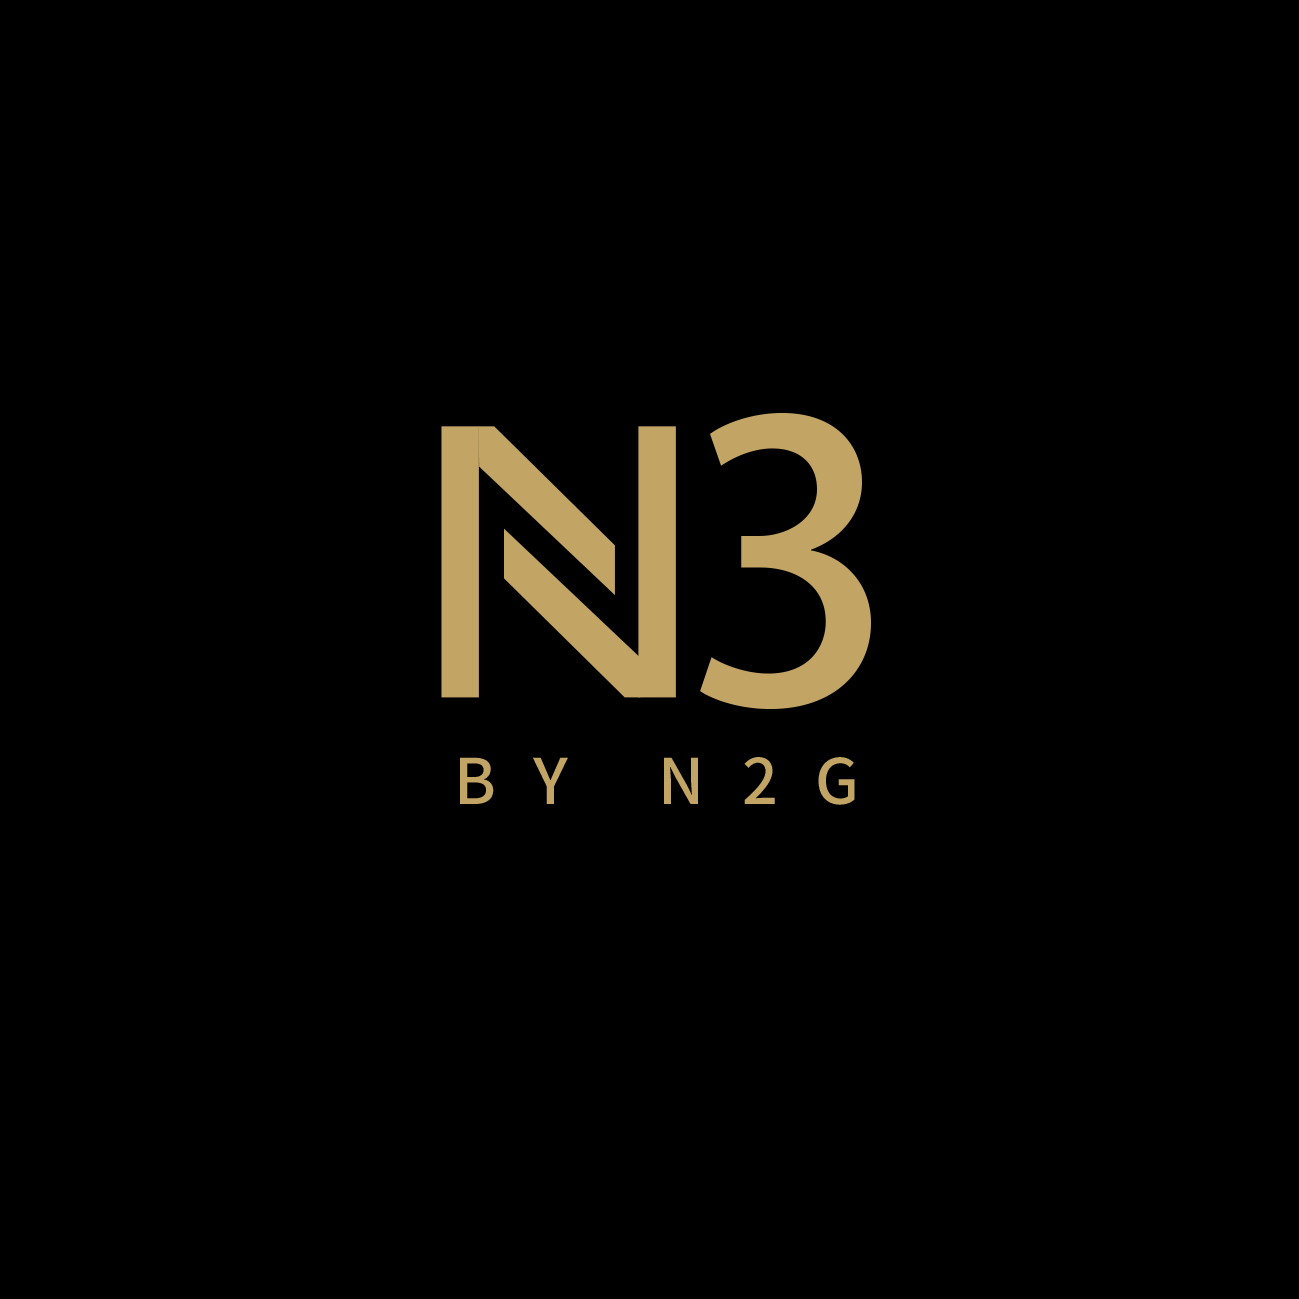 N3 By N2G